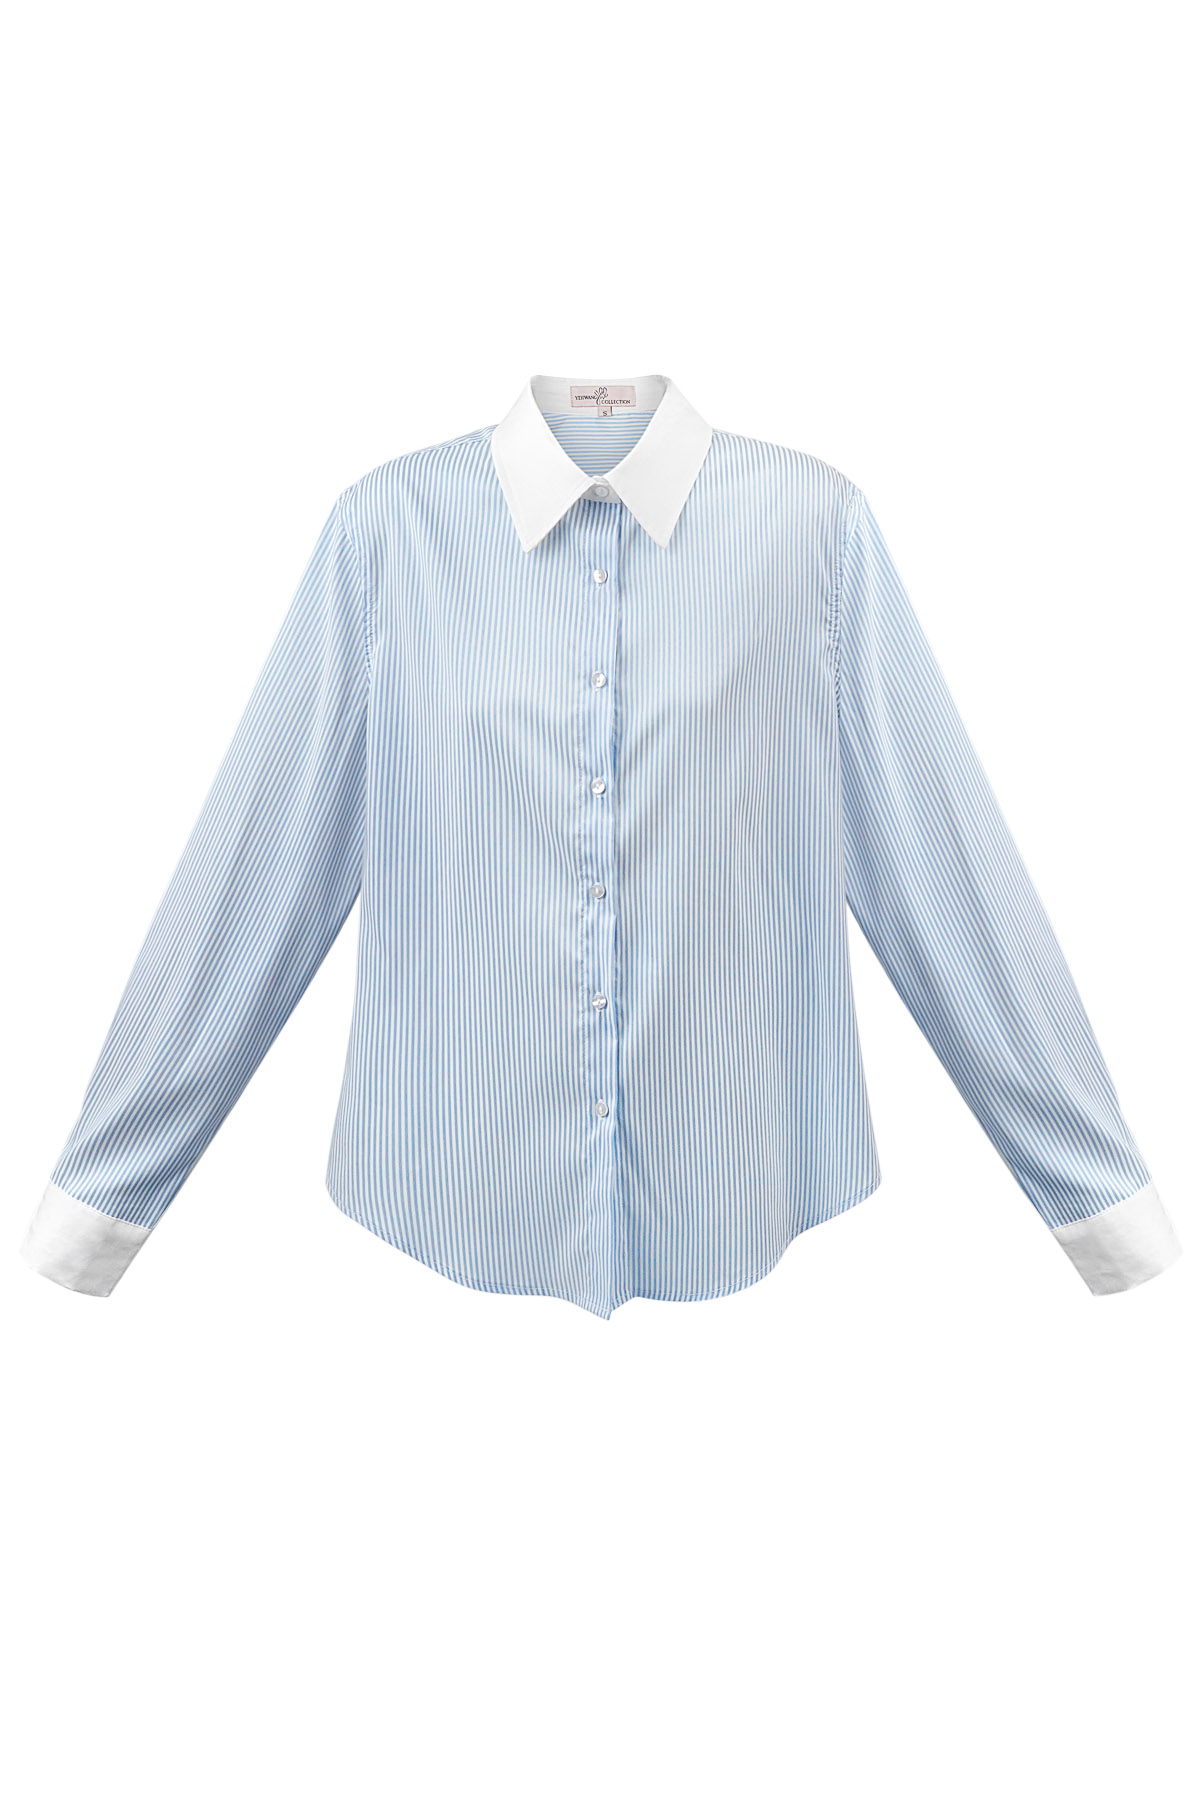 Temel bluz şeritleri - beyaz/mavi 